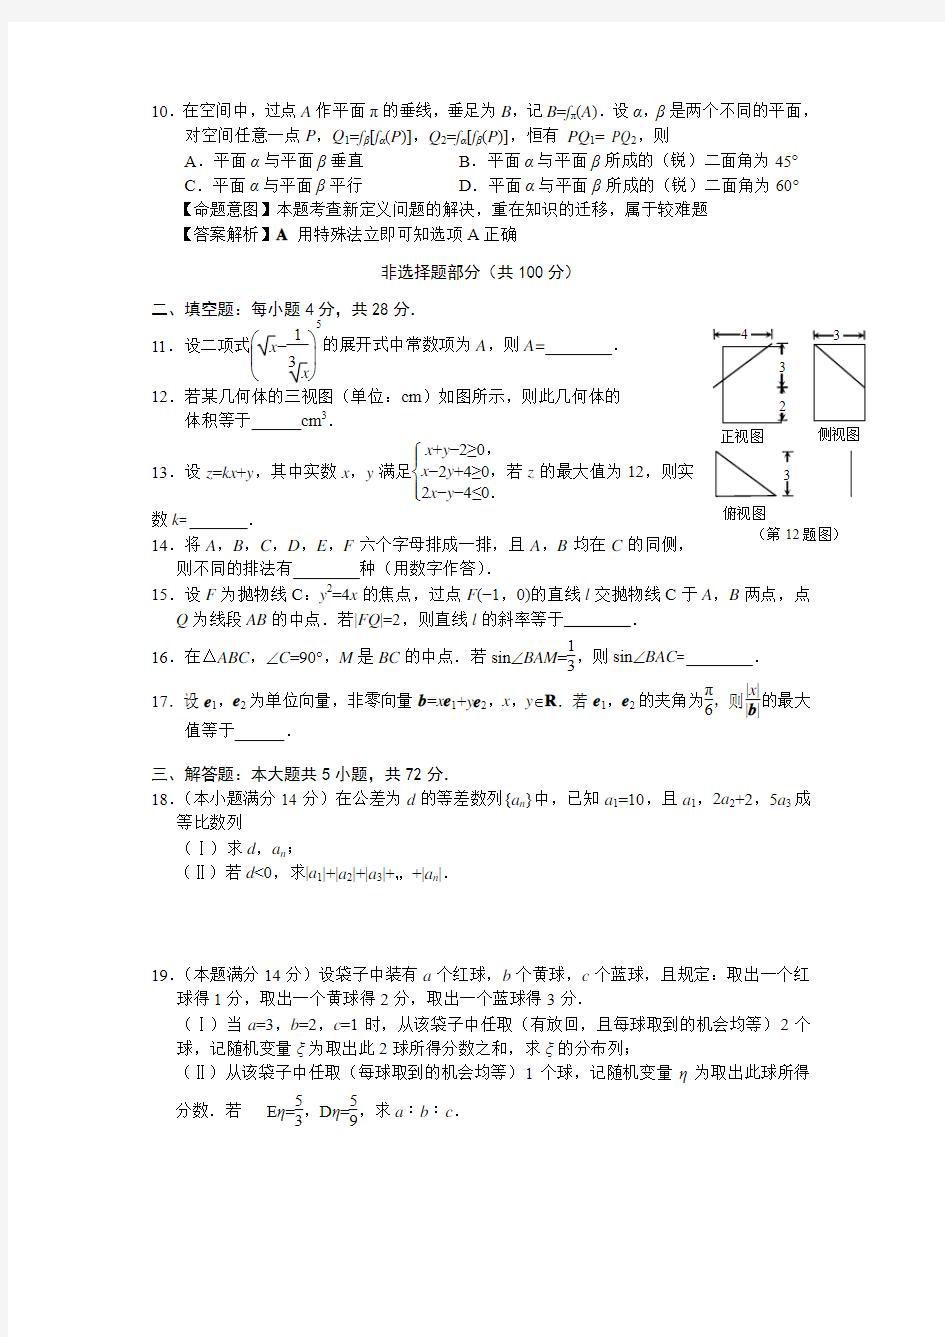 2013年浙江高考理科数学试题及参考答案解析